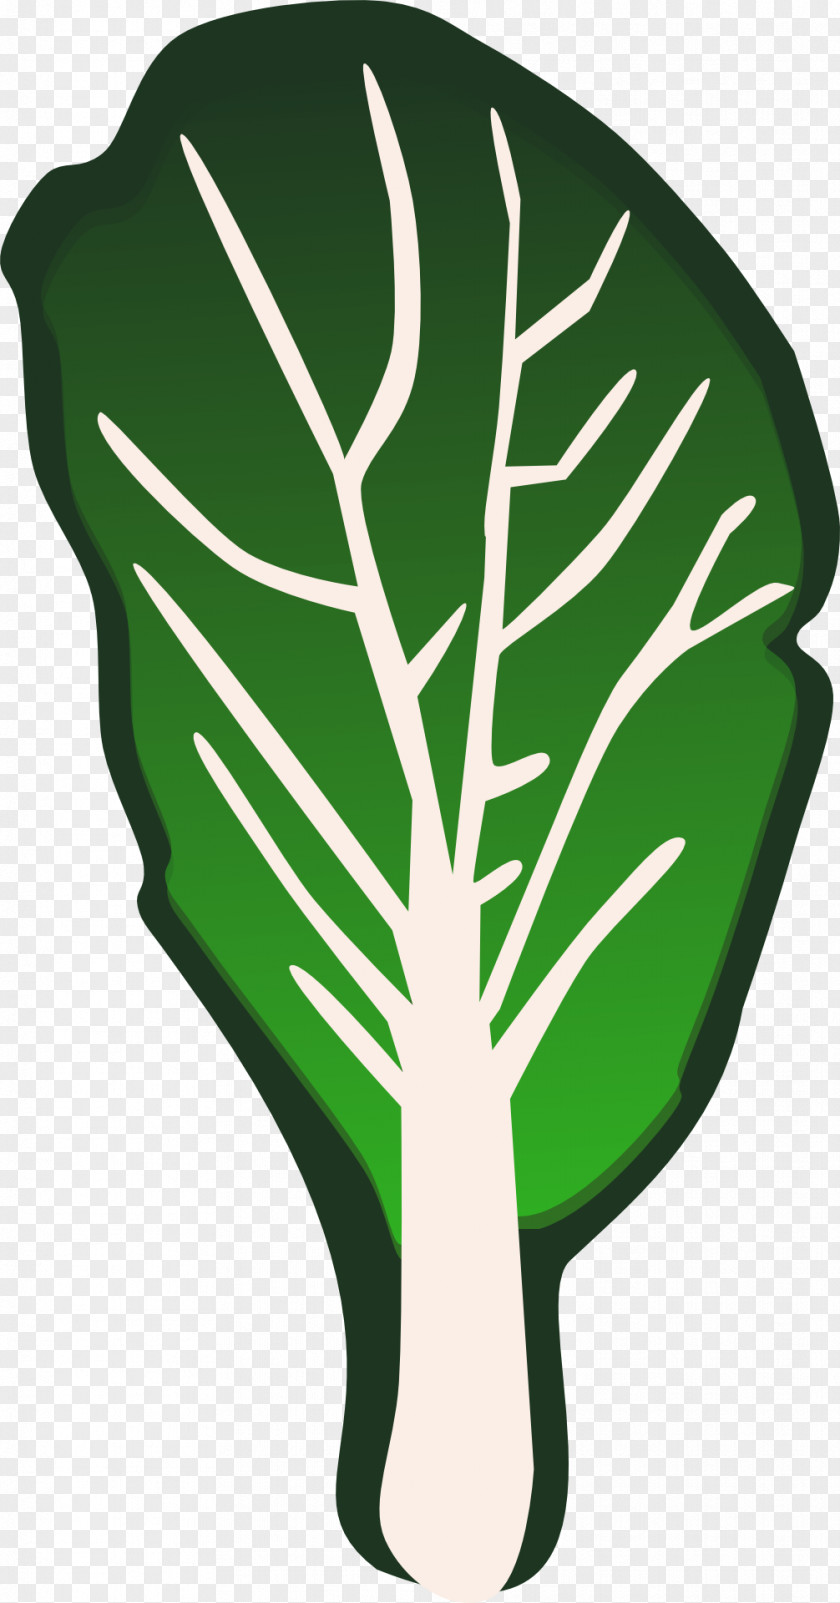 Green Cabbage Leaves Leaf Vegetable Lettuce Clip Art PNG